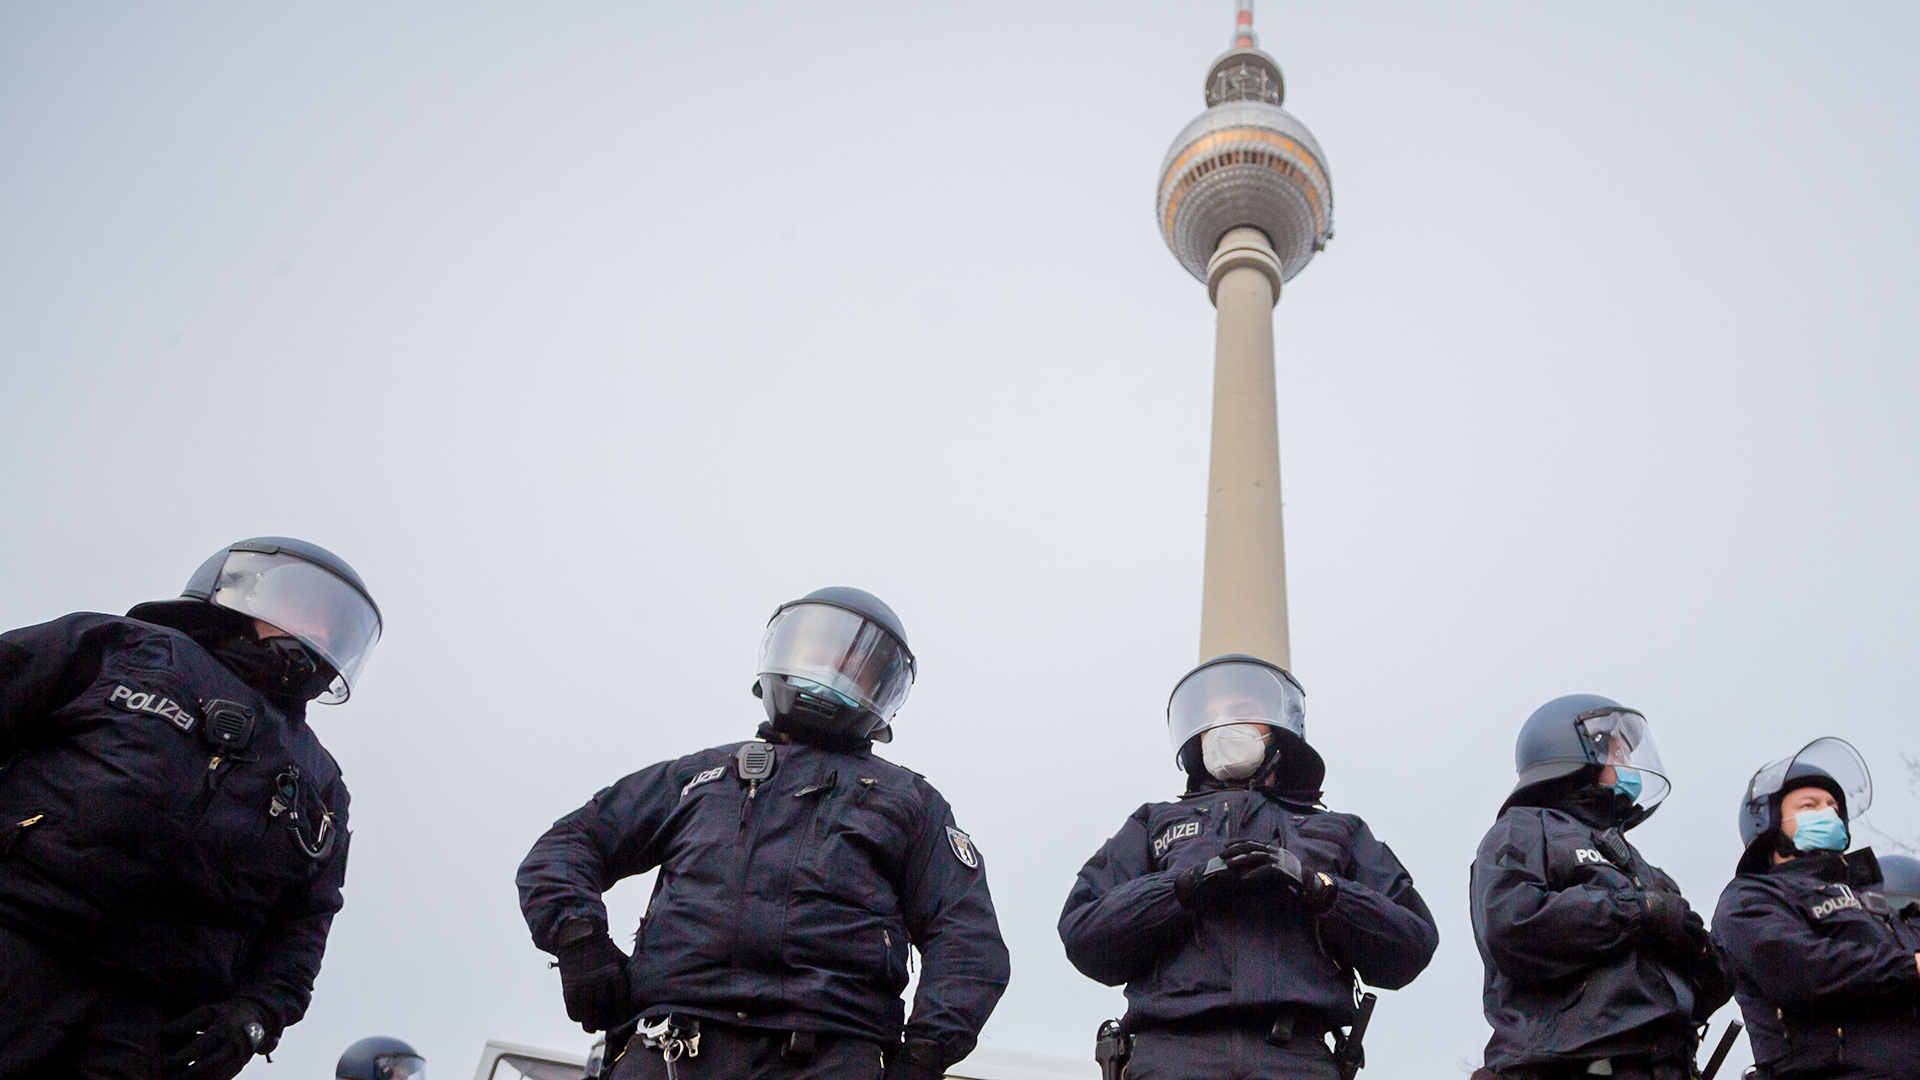 Polizisten stehen am 28.03.2021 bei einer Demonstration gegen die Corona-Maßnahmen vor dem Berliner Fernsehturm. (Quelle. dpa/Christoph Soeder)